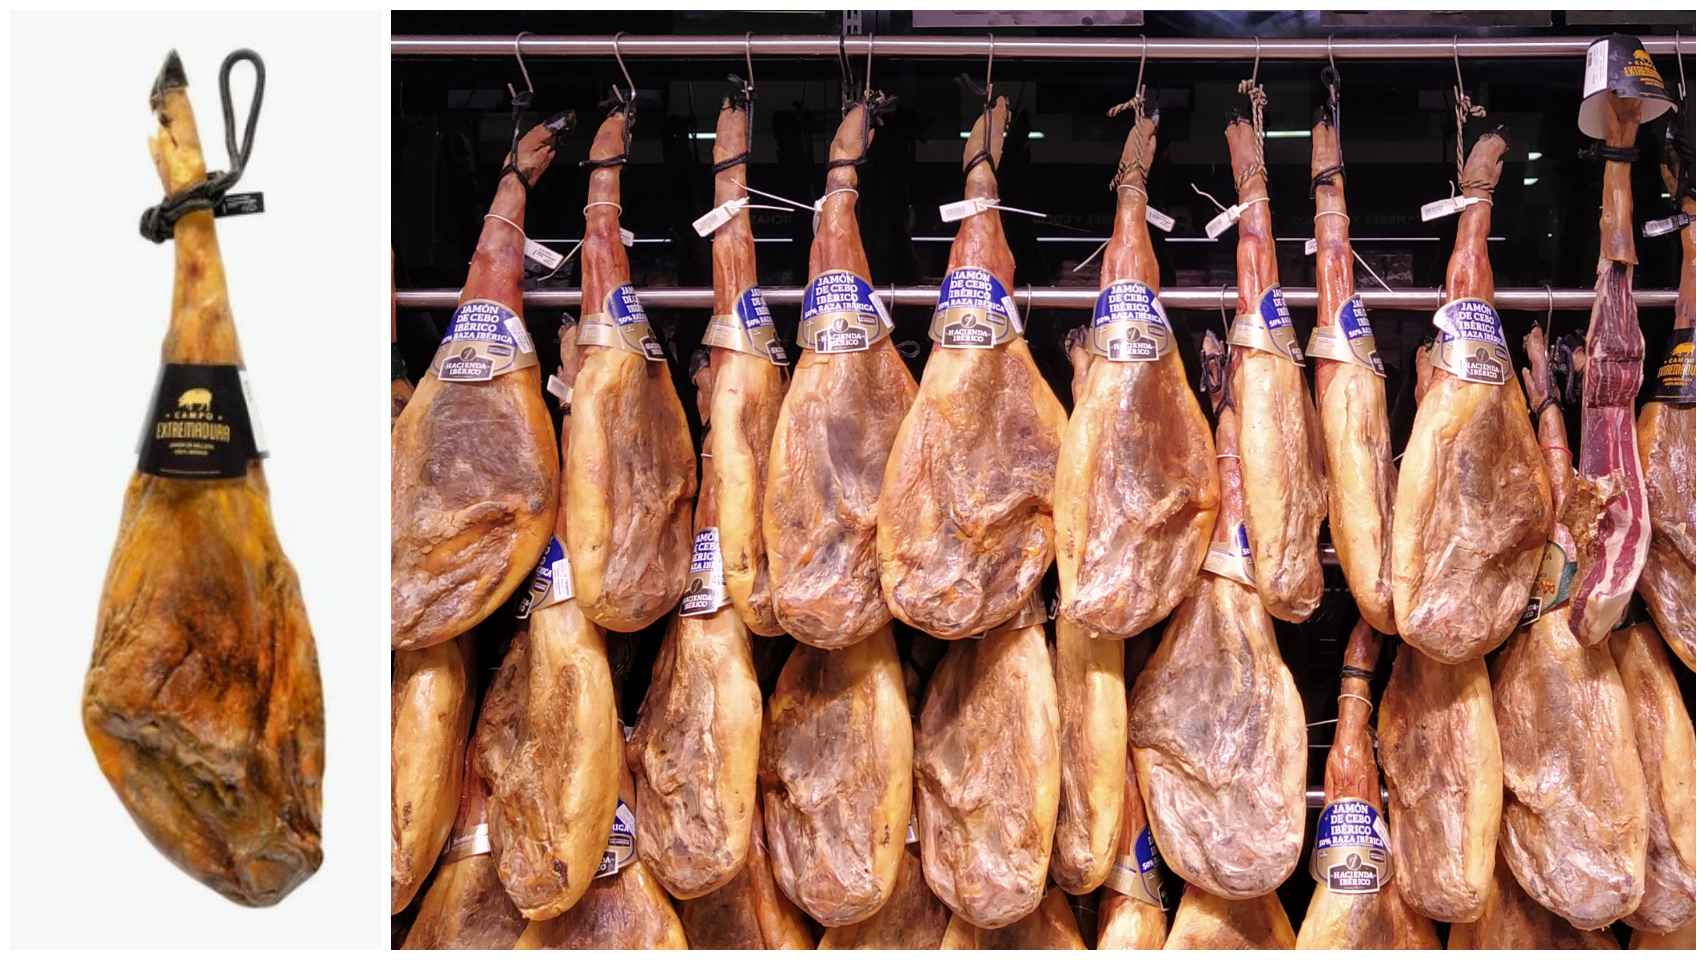 El jamón de bellota ibérico 100% Campo Extremadura y los de la charcutería del Mercadona visitado.